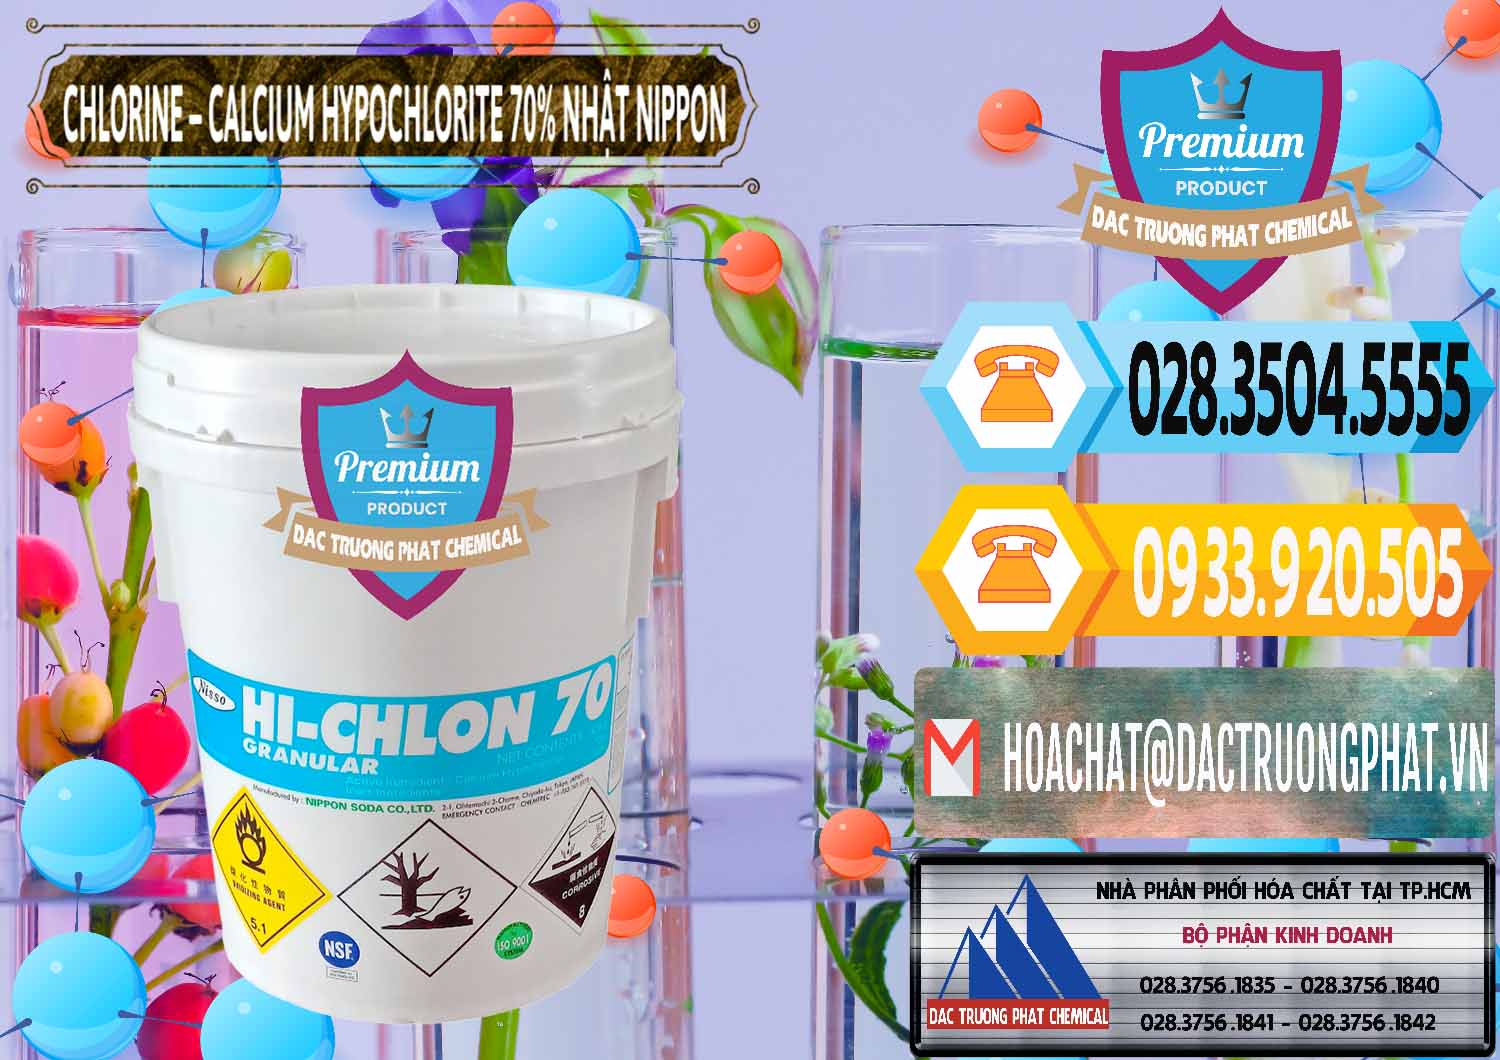 Đơn vị chuyên bán & cung cấp Clorin – Chlorine 70% Nippon Soda Nhật Bản Japan - 0055 - Cty chuyên phân phối & kinh doanh hóa chất tại TP.HCM - hoachattayrua.net